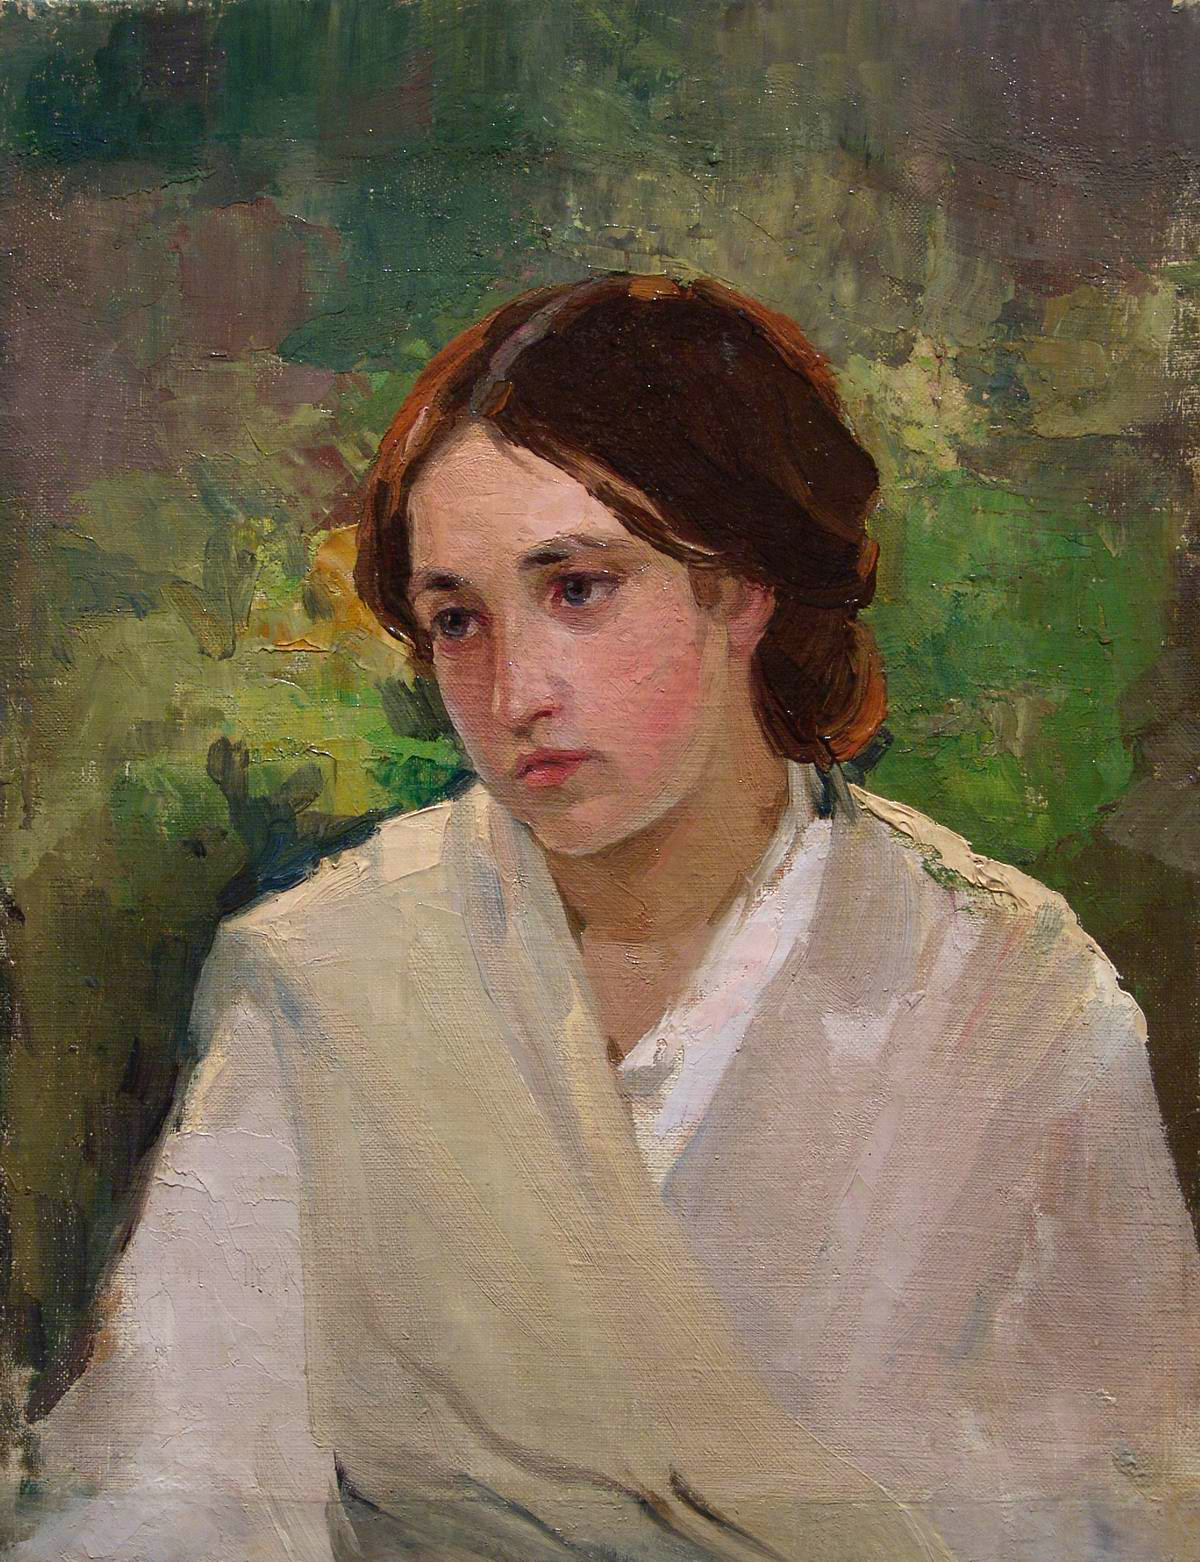 Нестеров М.. Портрет девушки. Около 1910